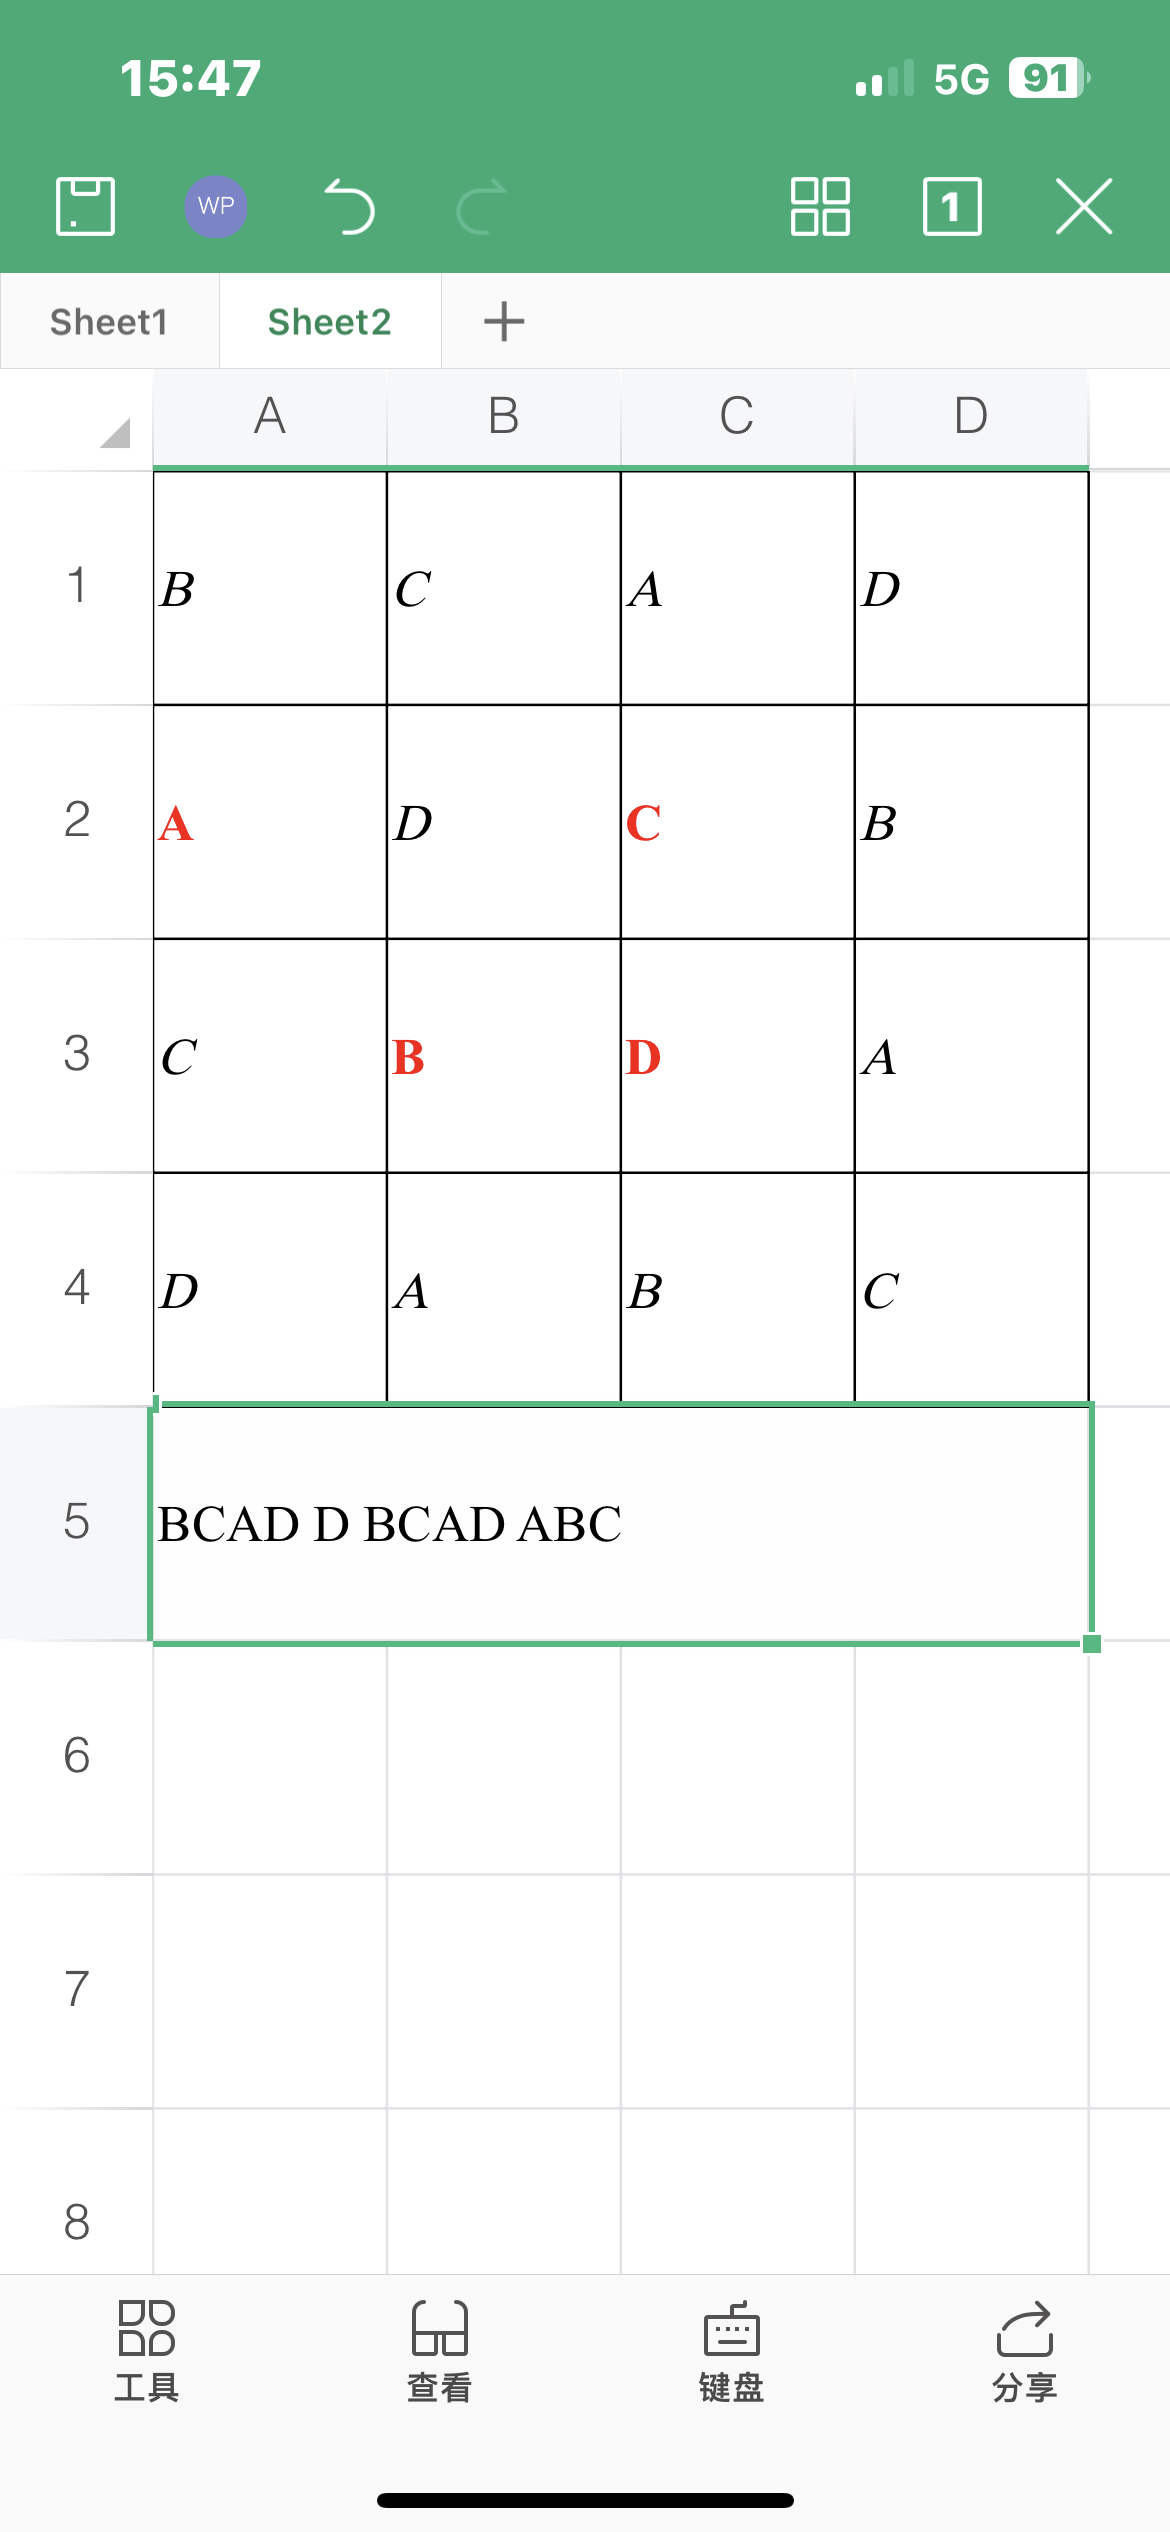 用不一样的视角带你玩数独关卡sudoku
这一关展现了一个2*2的数独（仅含1-4），其中我们需要根据四个不重复的随机的初始值填空，按行的顺序依次前往数字对应的路点直至填完所有的空。这关要处理的问题就是初始值的不确定性，我们需要根据不同的初值填不同的数字。
 既然初始值不确定，那么我们就用一点小学的知识：设四个初始值分别为ABCD，那么根据数独的规则很容易就能得出所有空的值（如图一）。将填写顺序排